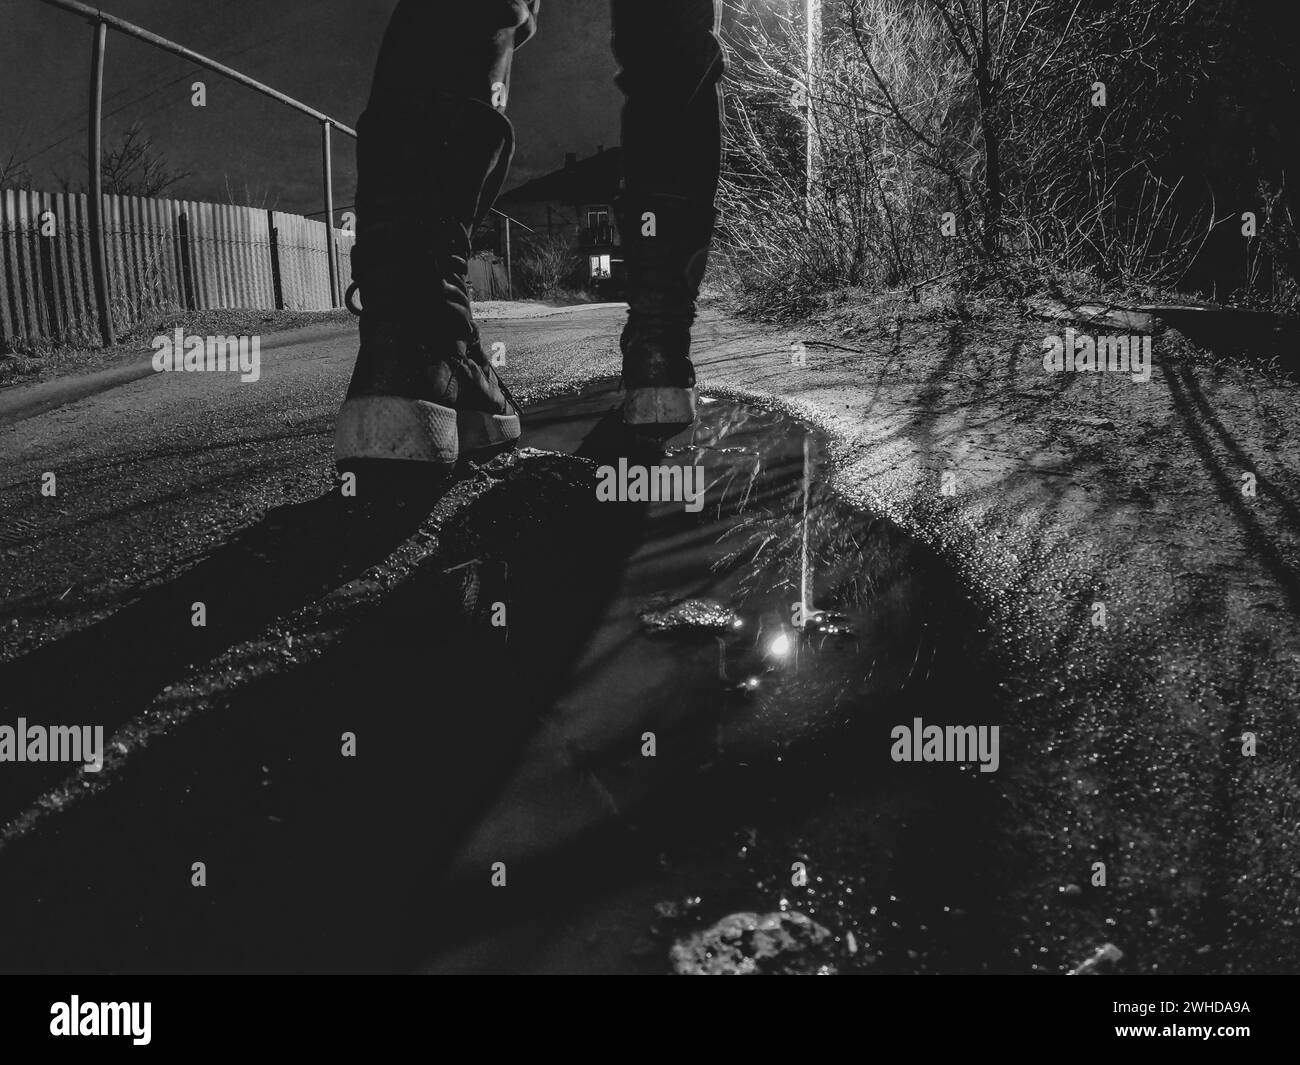 Una ragazza cammina lungo una bagnata strada invernale fino a casa al buio, vista dal basso verso l'alto, foto in bianco e nero, piedi sulla strada al buio Foto Stock